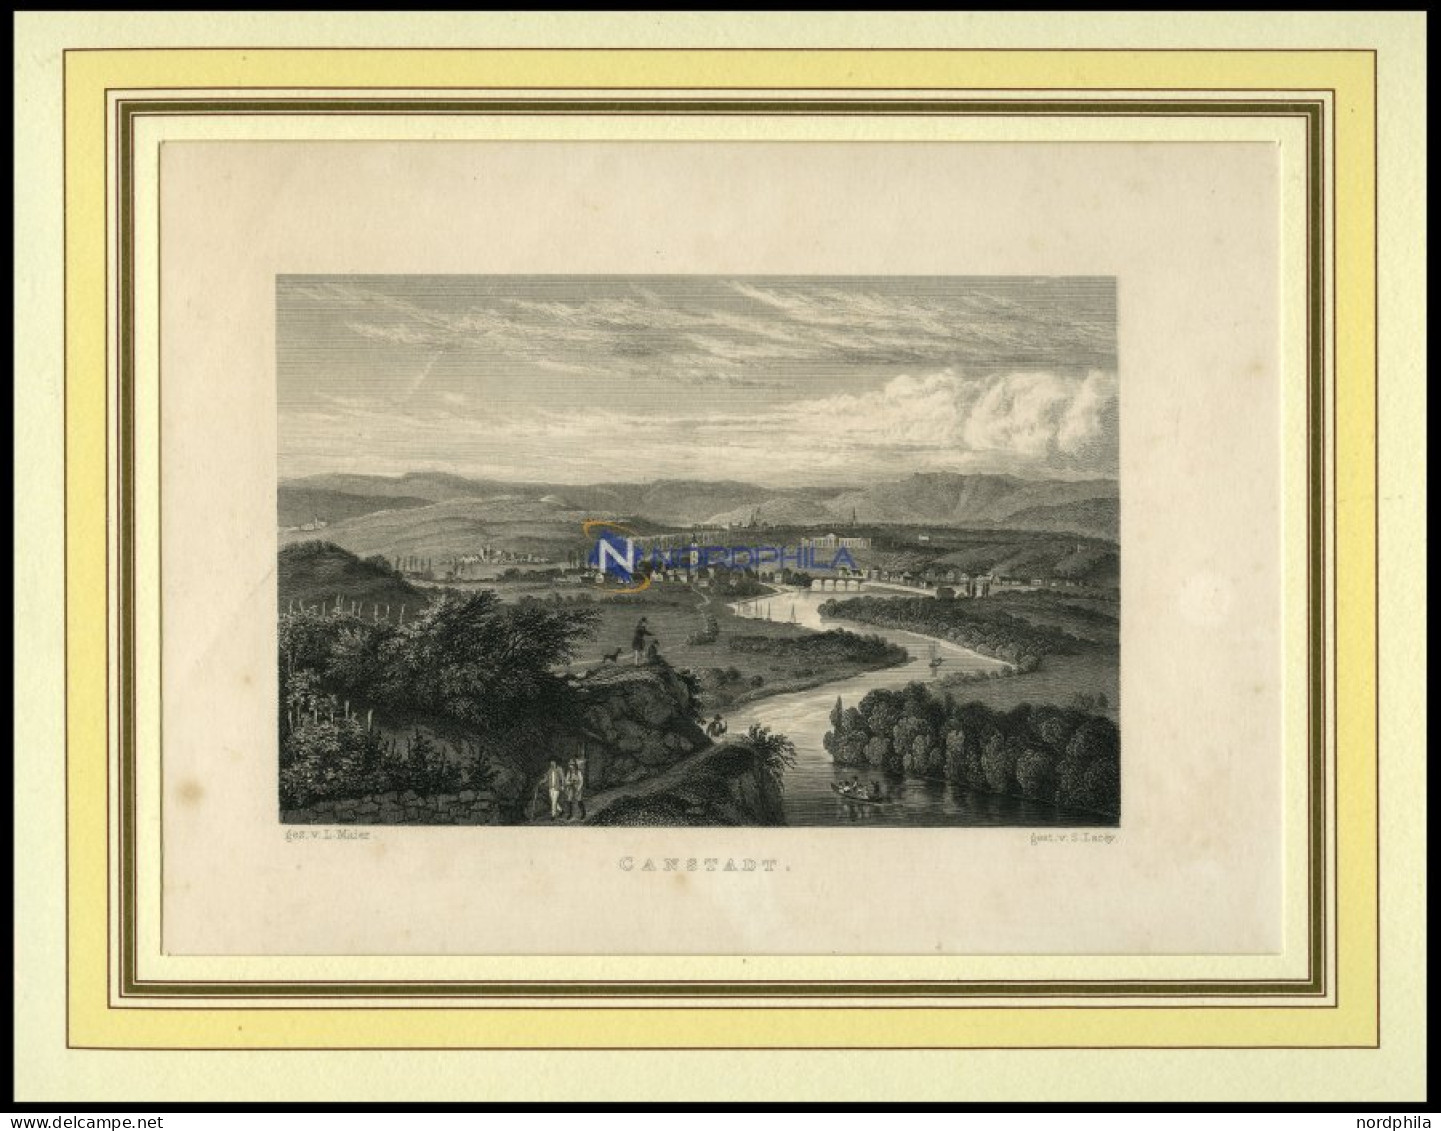 CANNSTADT, Gesamtansicht, Stahlstich Von Maier/Lacey Um 1840 - Stiche & Gravuren